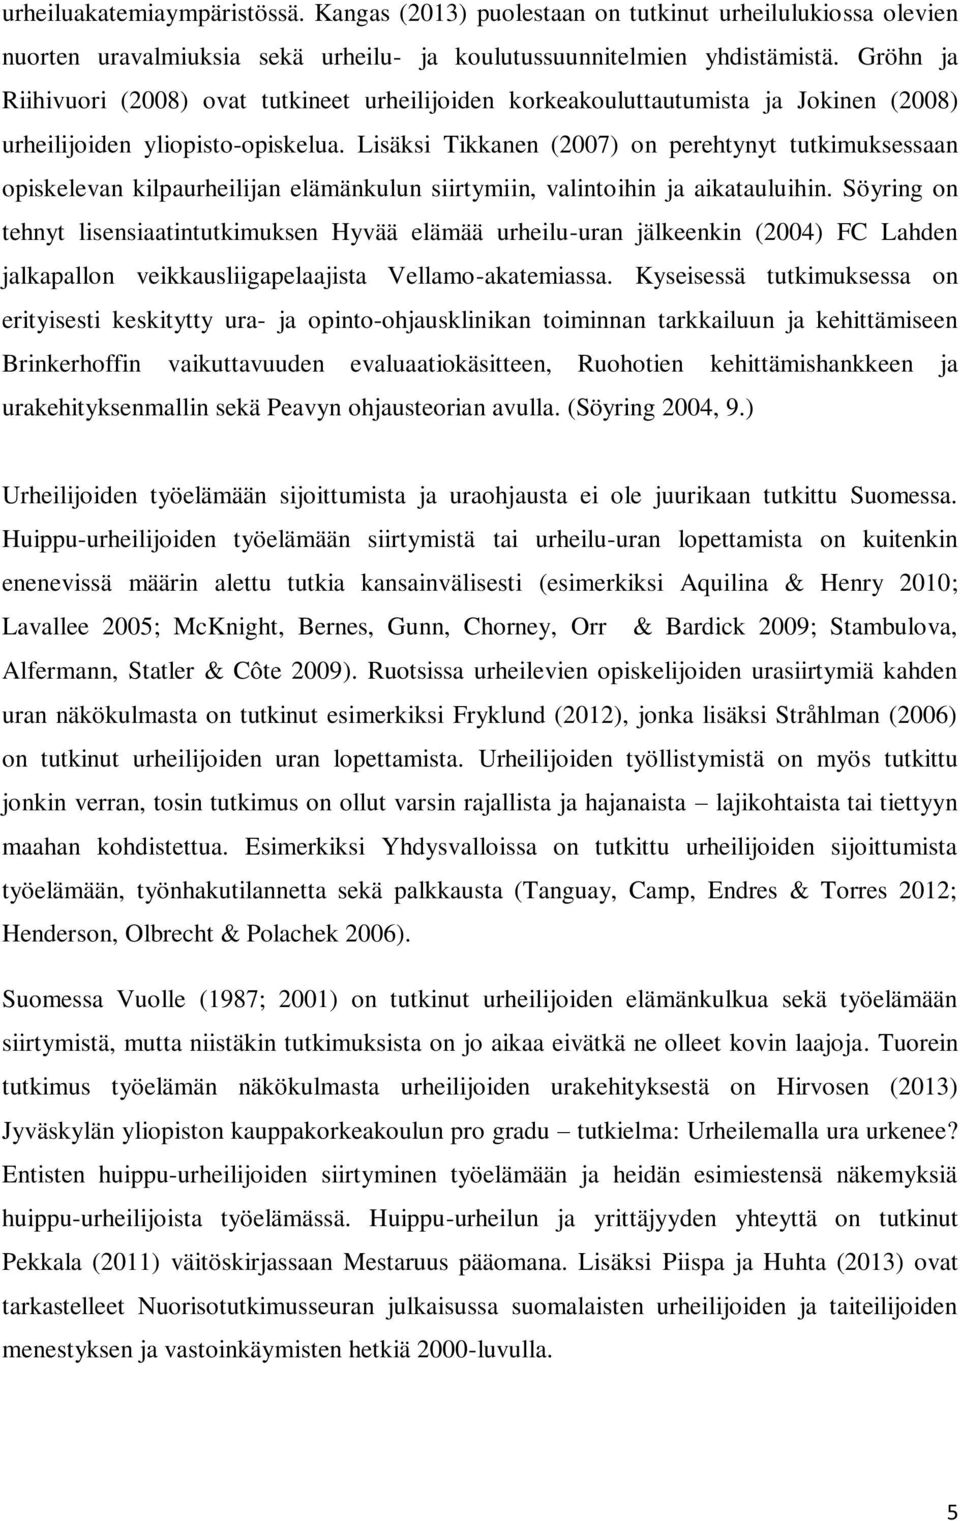 Lisäksi Tikkanen (2007) on perehtynyt tutkimuksessaan opiskelevan kilpaurheilijan elämänkulun siirtymiin, valintoihin ja aikatauluihin.